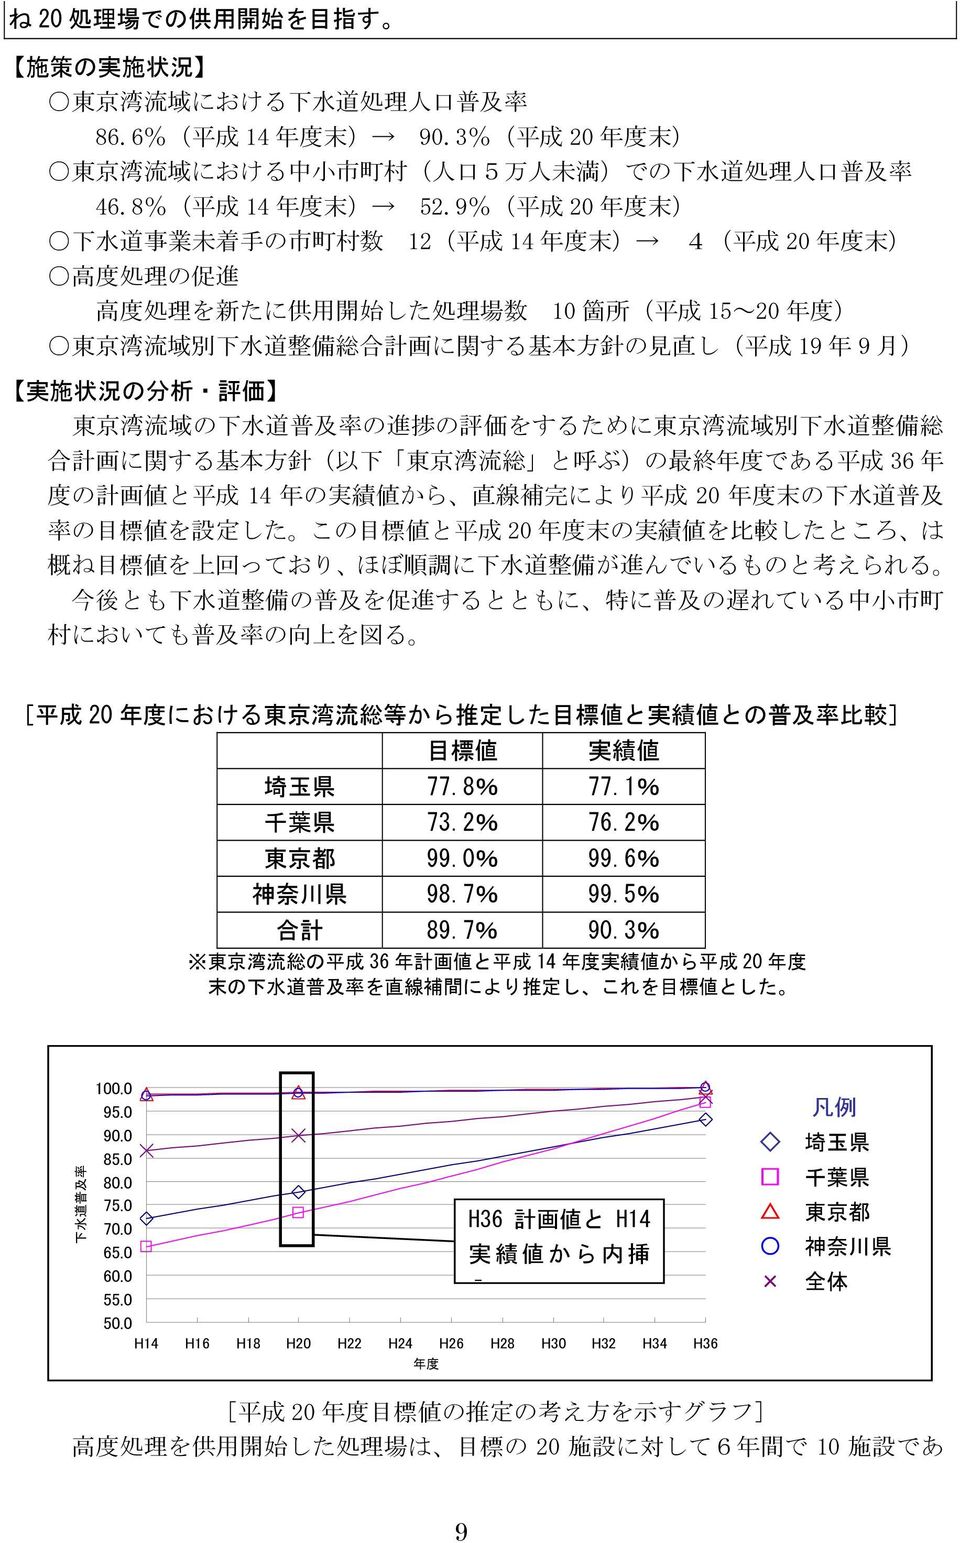 の 見 直 し( 平 成 19 年 9 月 ) 実 施 状 況 の 分 析 評 価 東 京 湾 流 域 の 下 水 道 普 及 率 の 進 捗 の 評 価 をするために 東 京 湾 流 域 別 下 水 道 整 備 総 合 計 画 に 関 する 基 本 方 針 ( 以 下 東 京 湾 流 総 と 呼 ぶ)の 最 終 年 度 である 平 成 36 年 度 の 計 画 値 と 平 成 14 年 の 実